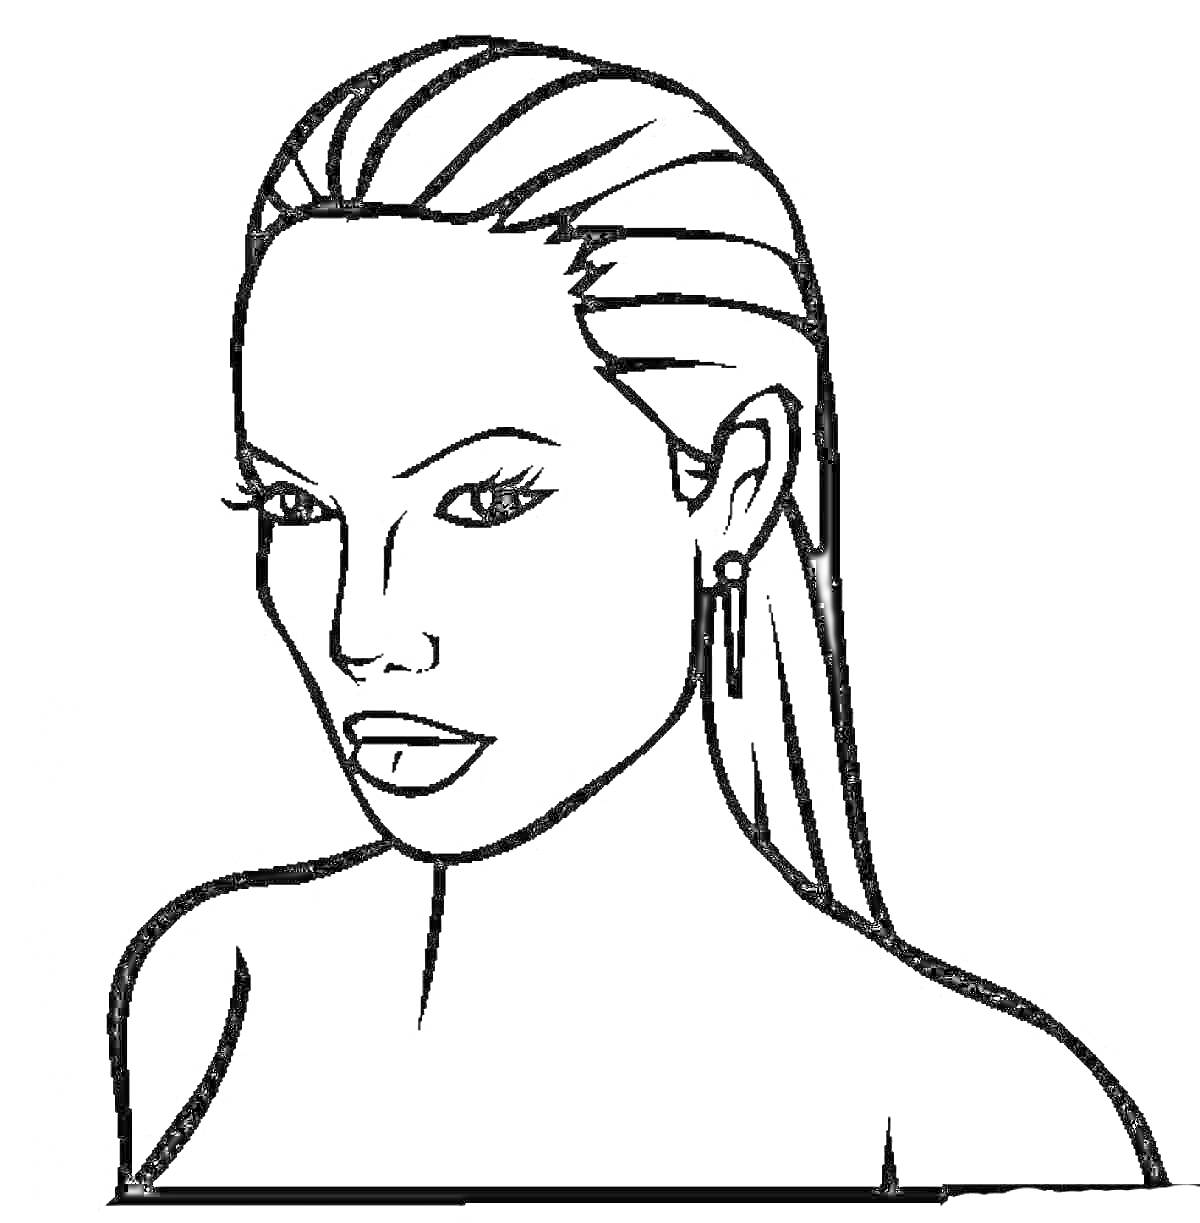 лицо девушки с длинными волосами, серьгами, и левой рукой, касающейся шеи